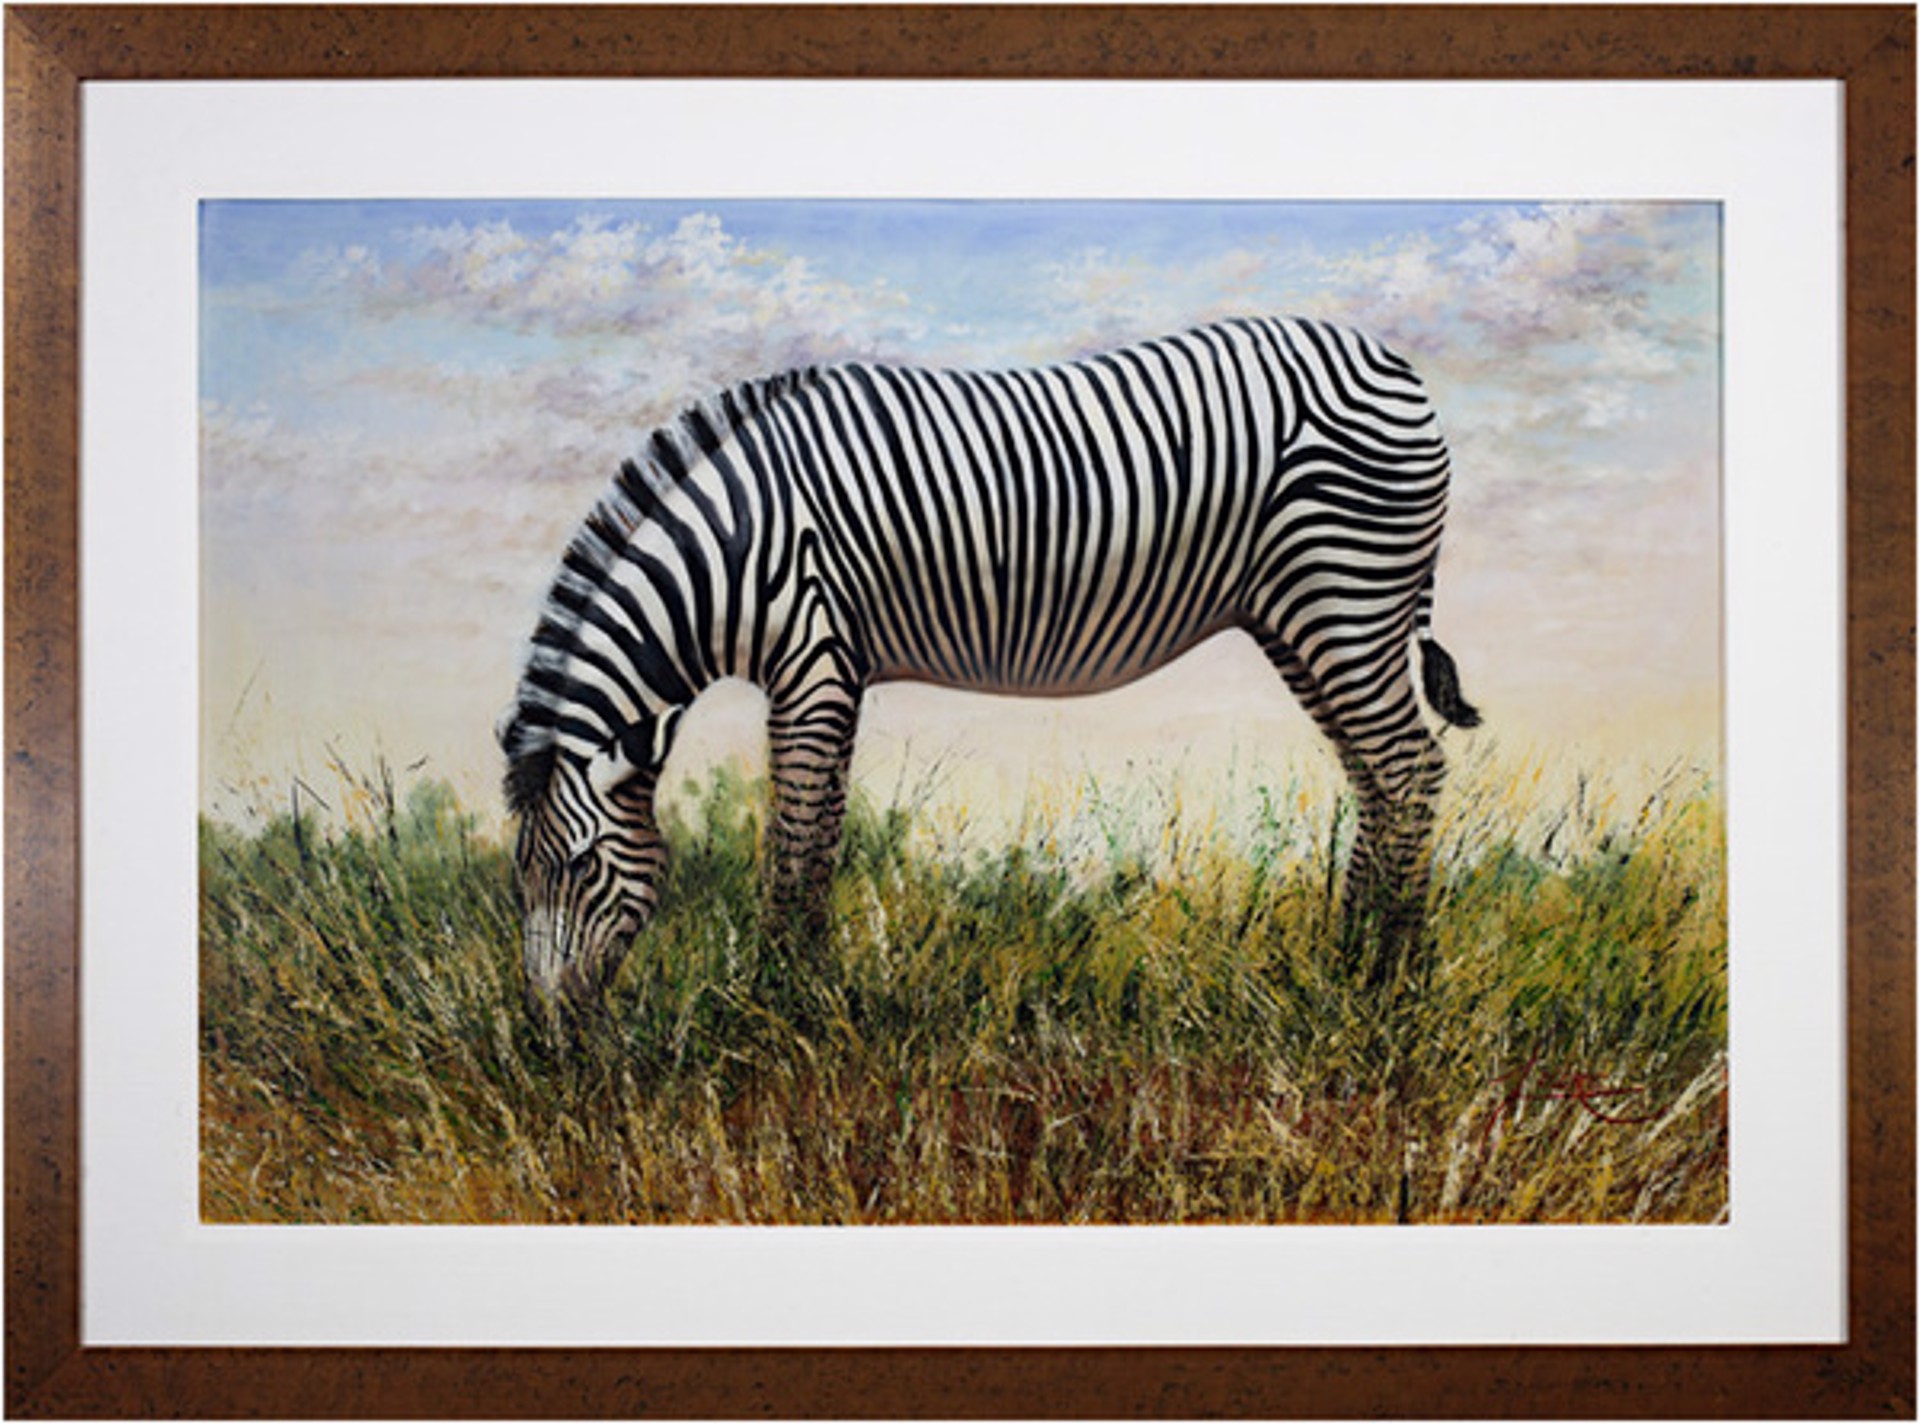 Grévy's Zebra by Lucre Chura